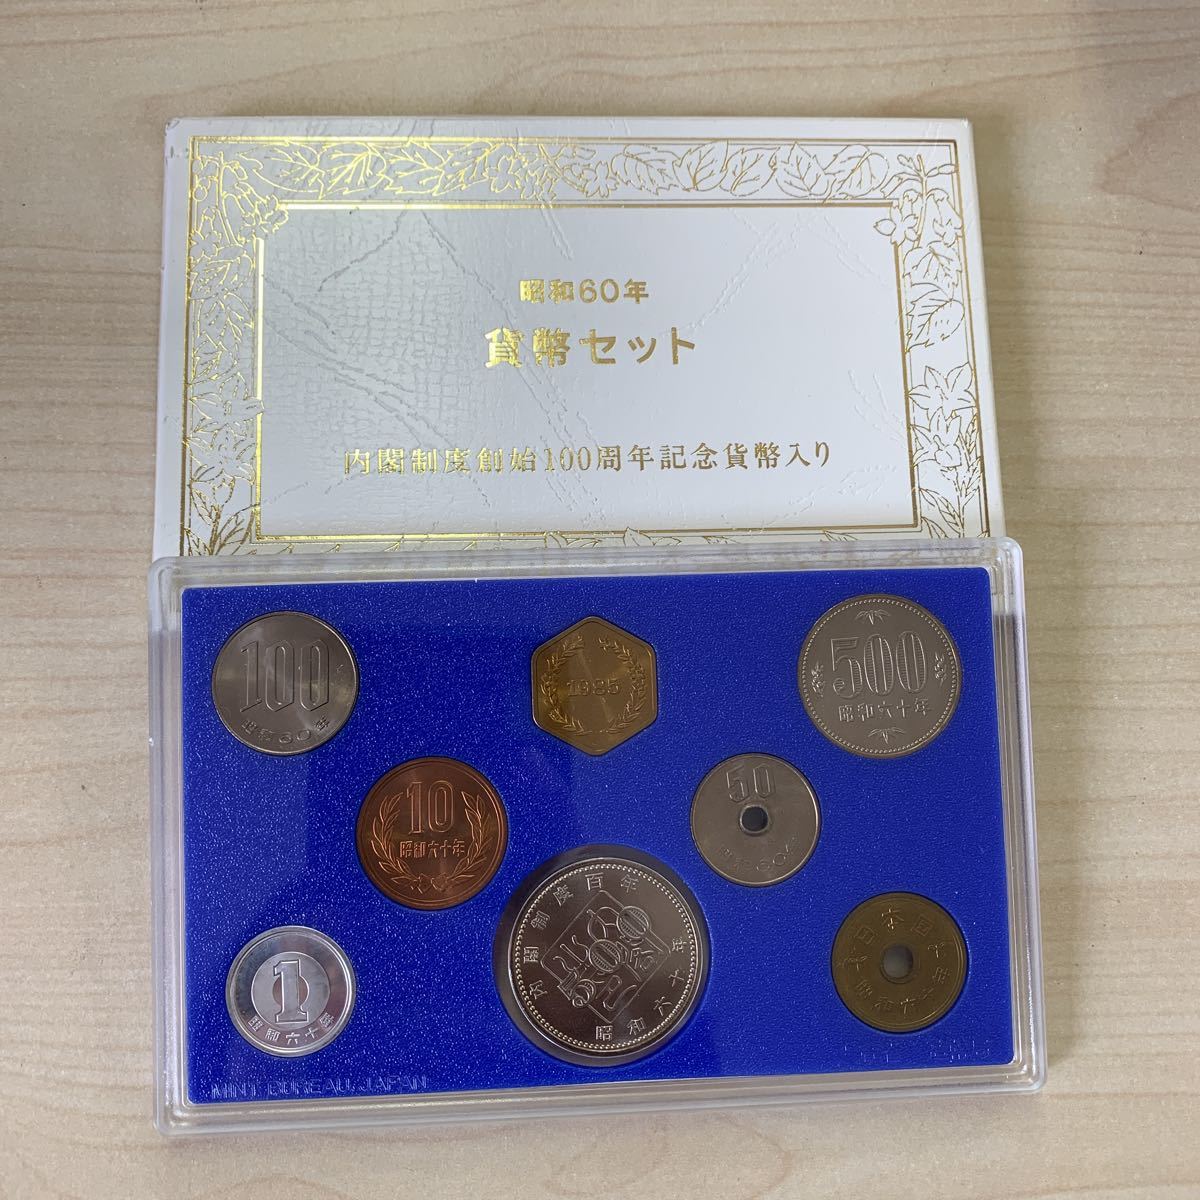 適当な価格 昭和61年 通常貨幣セット 1986年 記念硬貨 記念コイン 造幣局 ミントセット